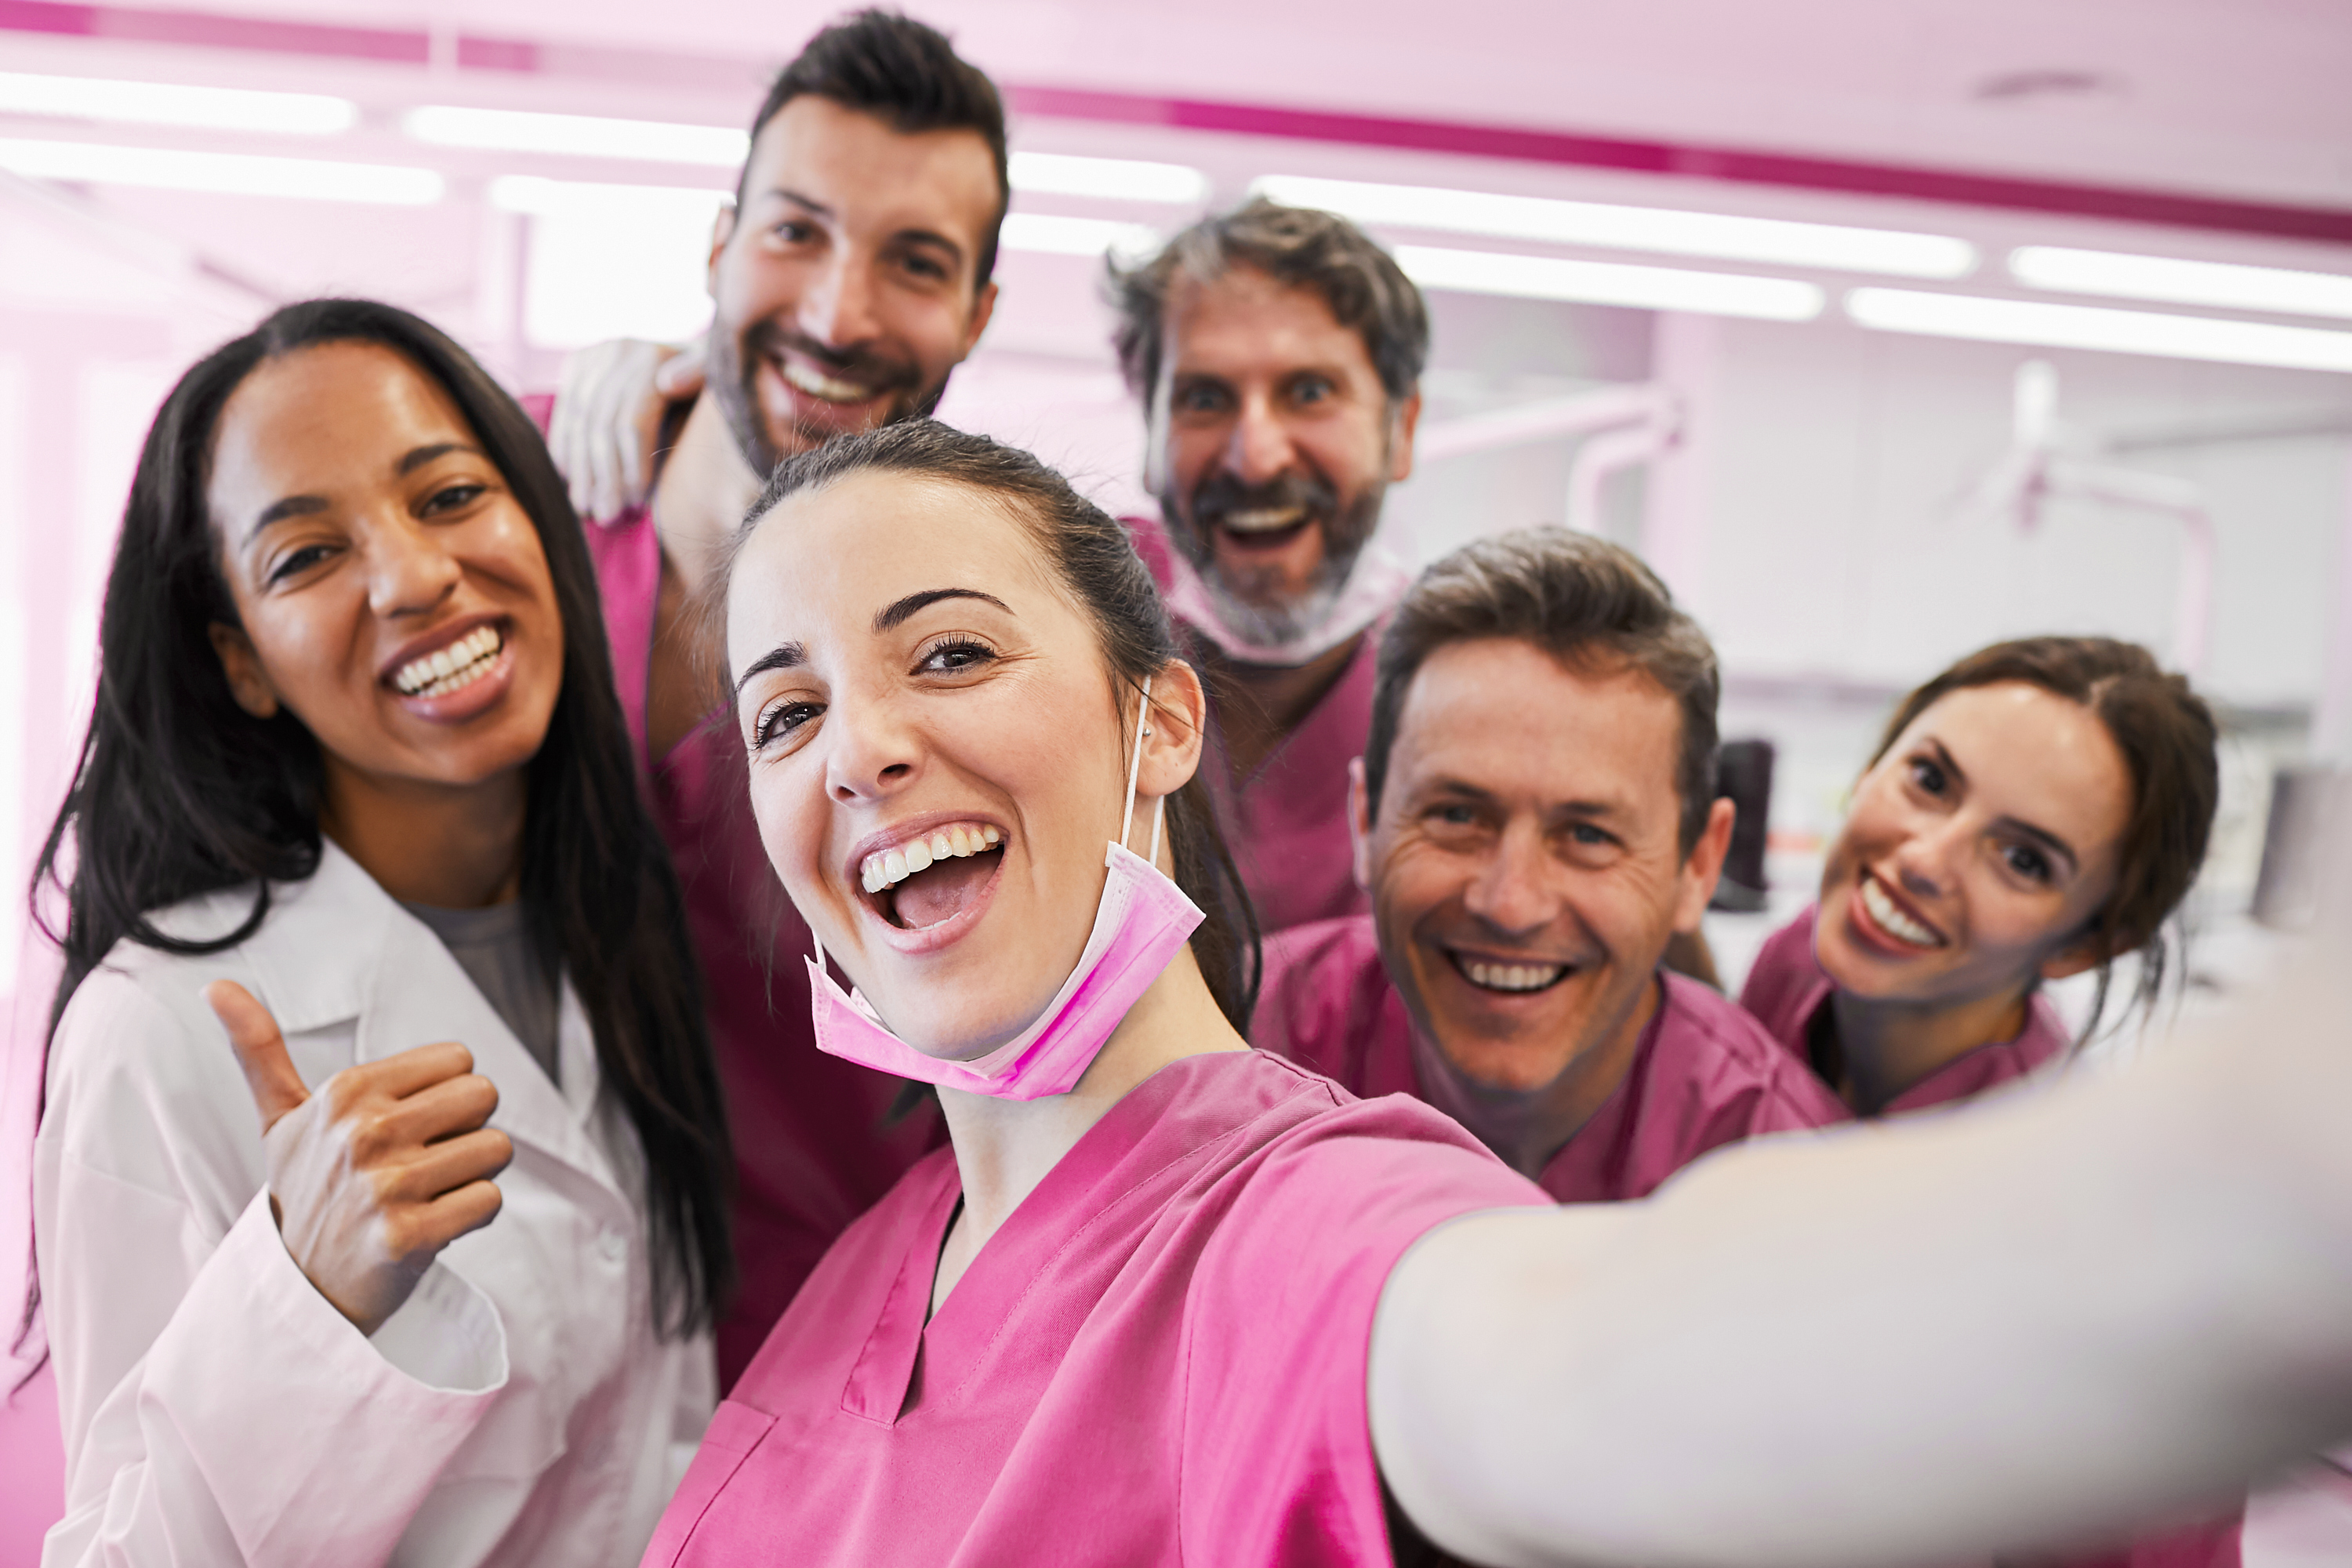 Eine Gruppe von Pfleger:innen in rosa Dienstkleidung, die für ein Selfie posieren.